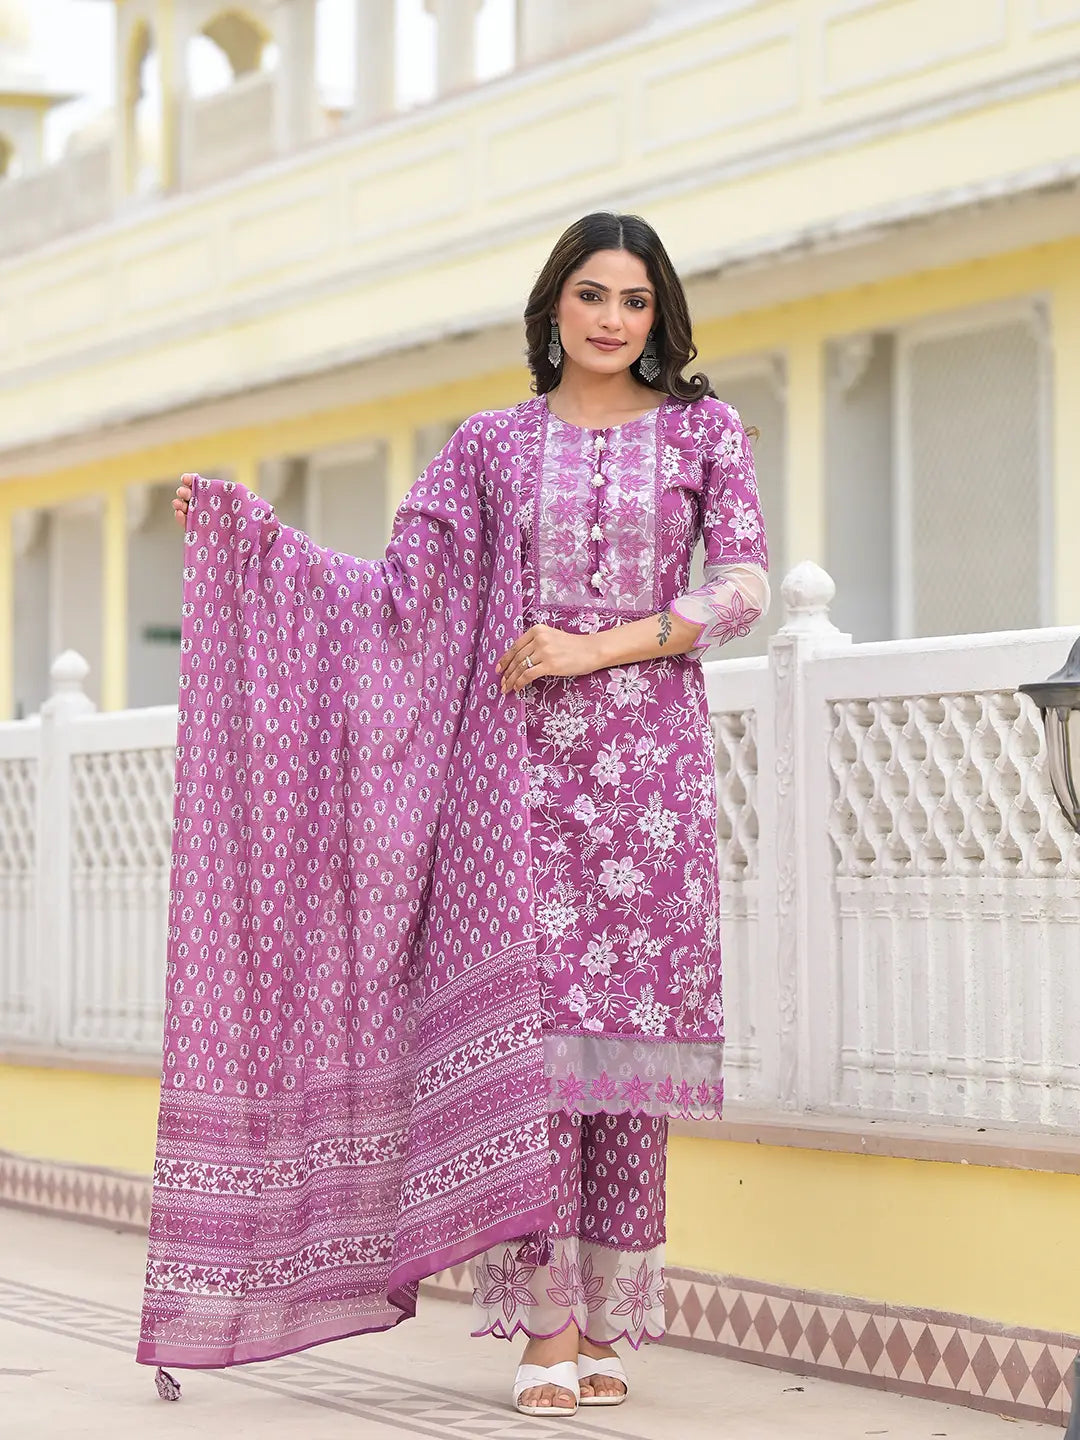 Lavender Floral Print Pakistani Style Kurta Trouser And Dupatta Set-Yufta Store-6891SKDLVM